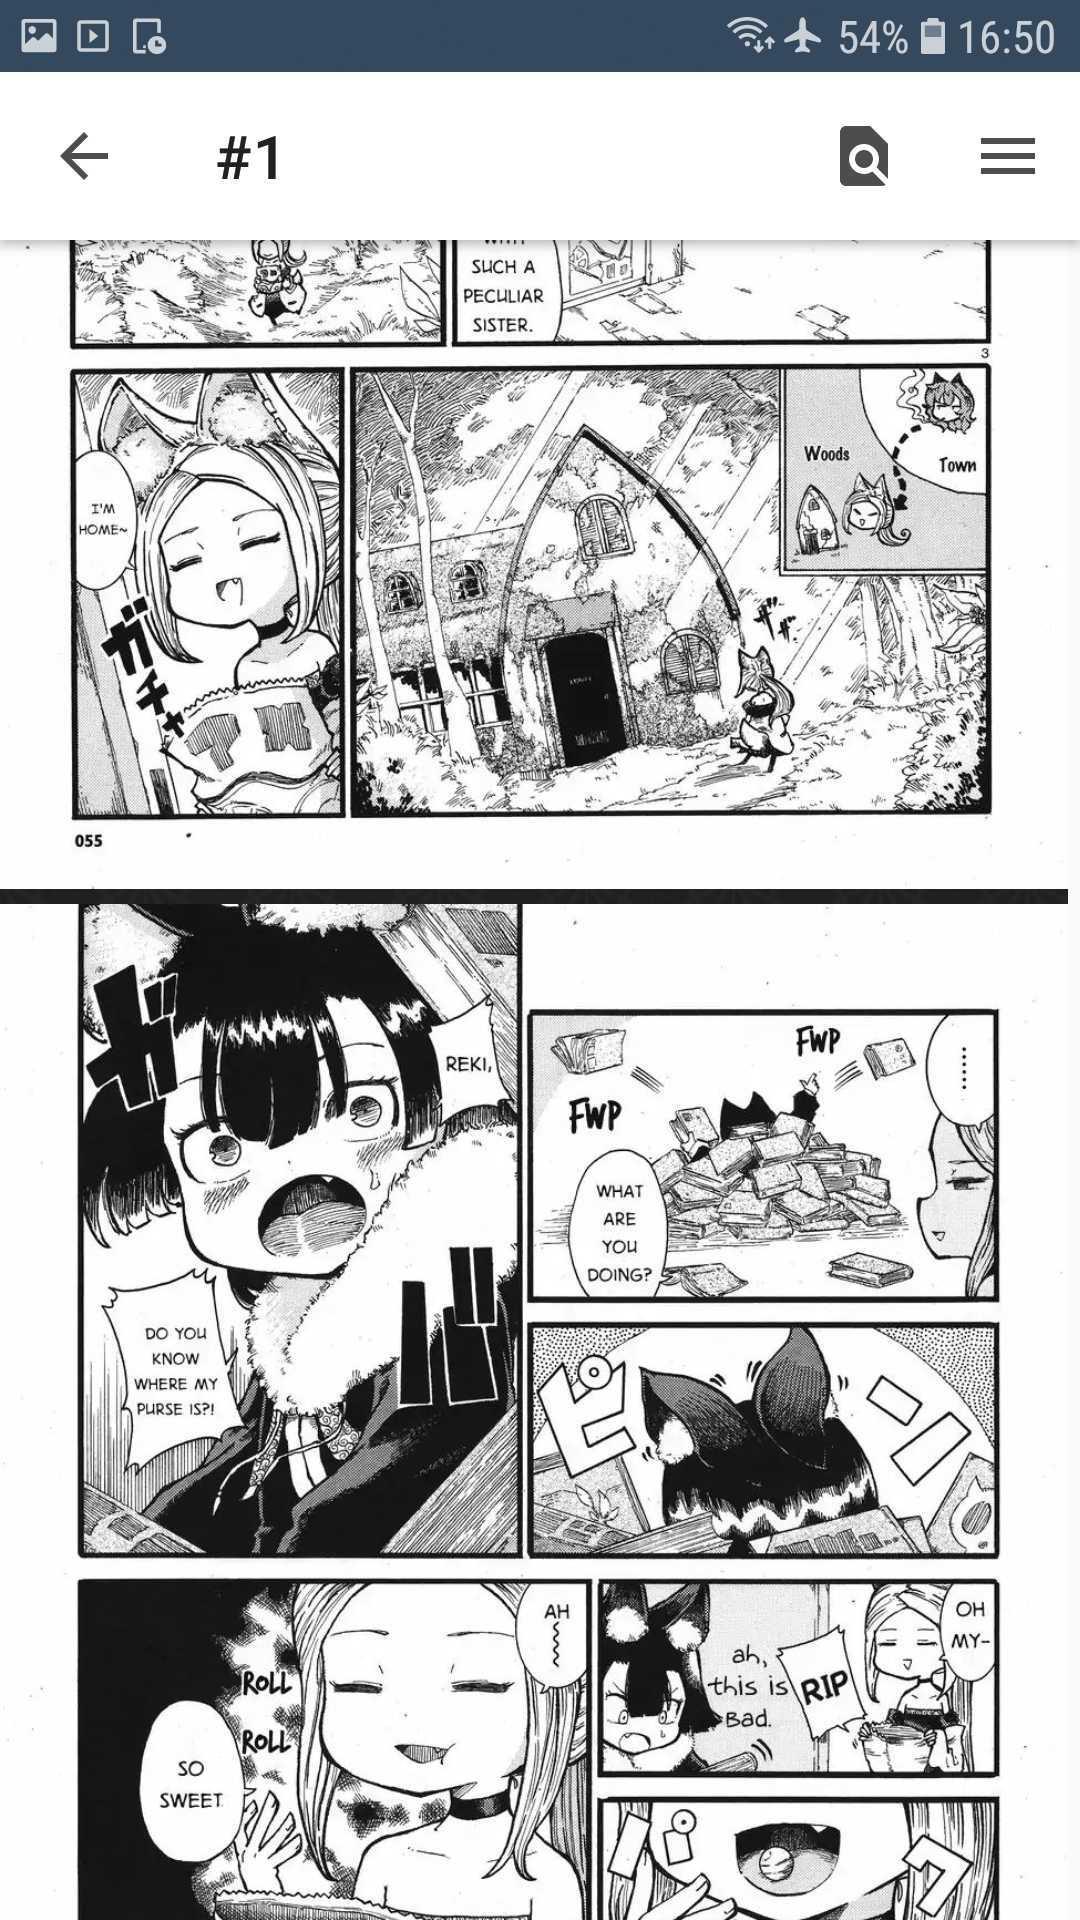 Manga Rock - Manga Reader